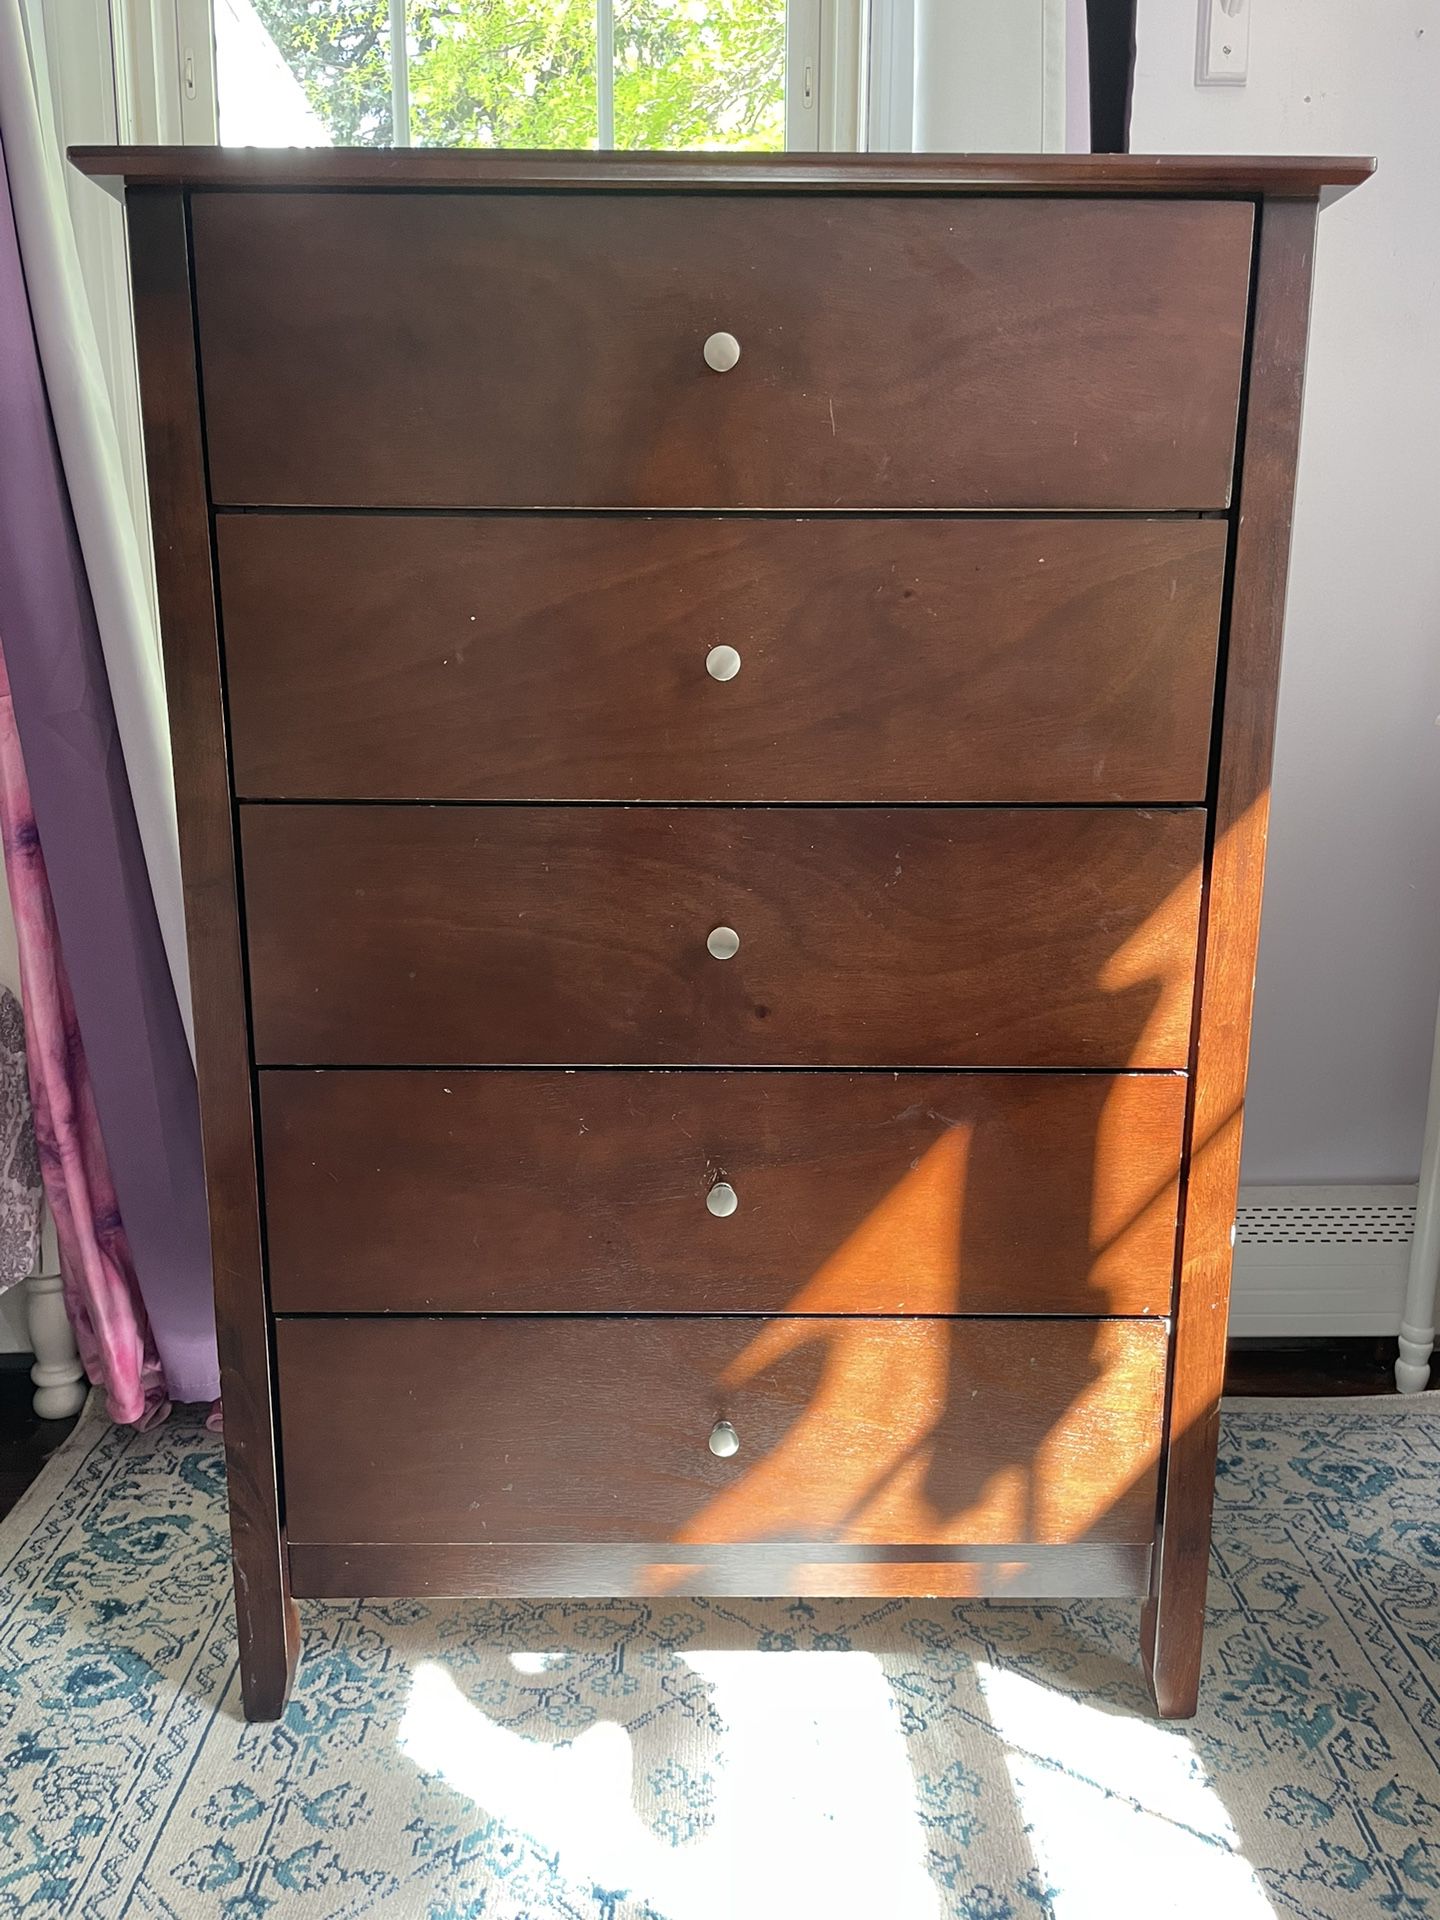 5 Drawer Tall Dresser - $60